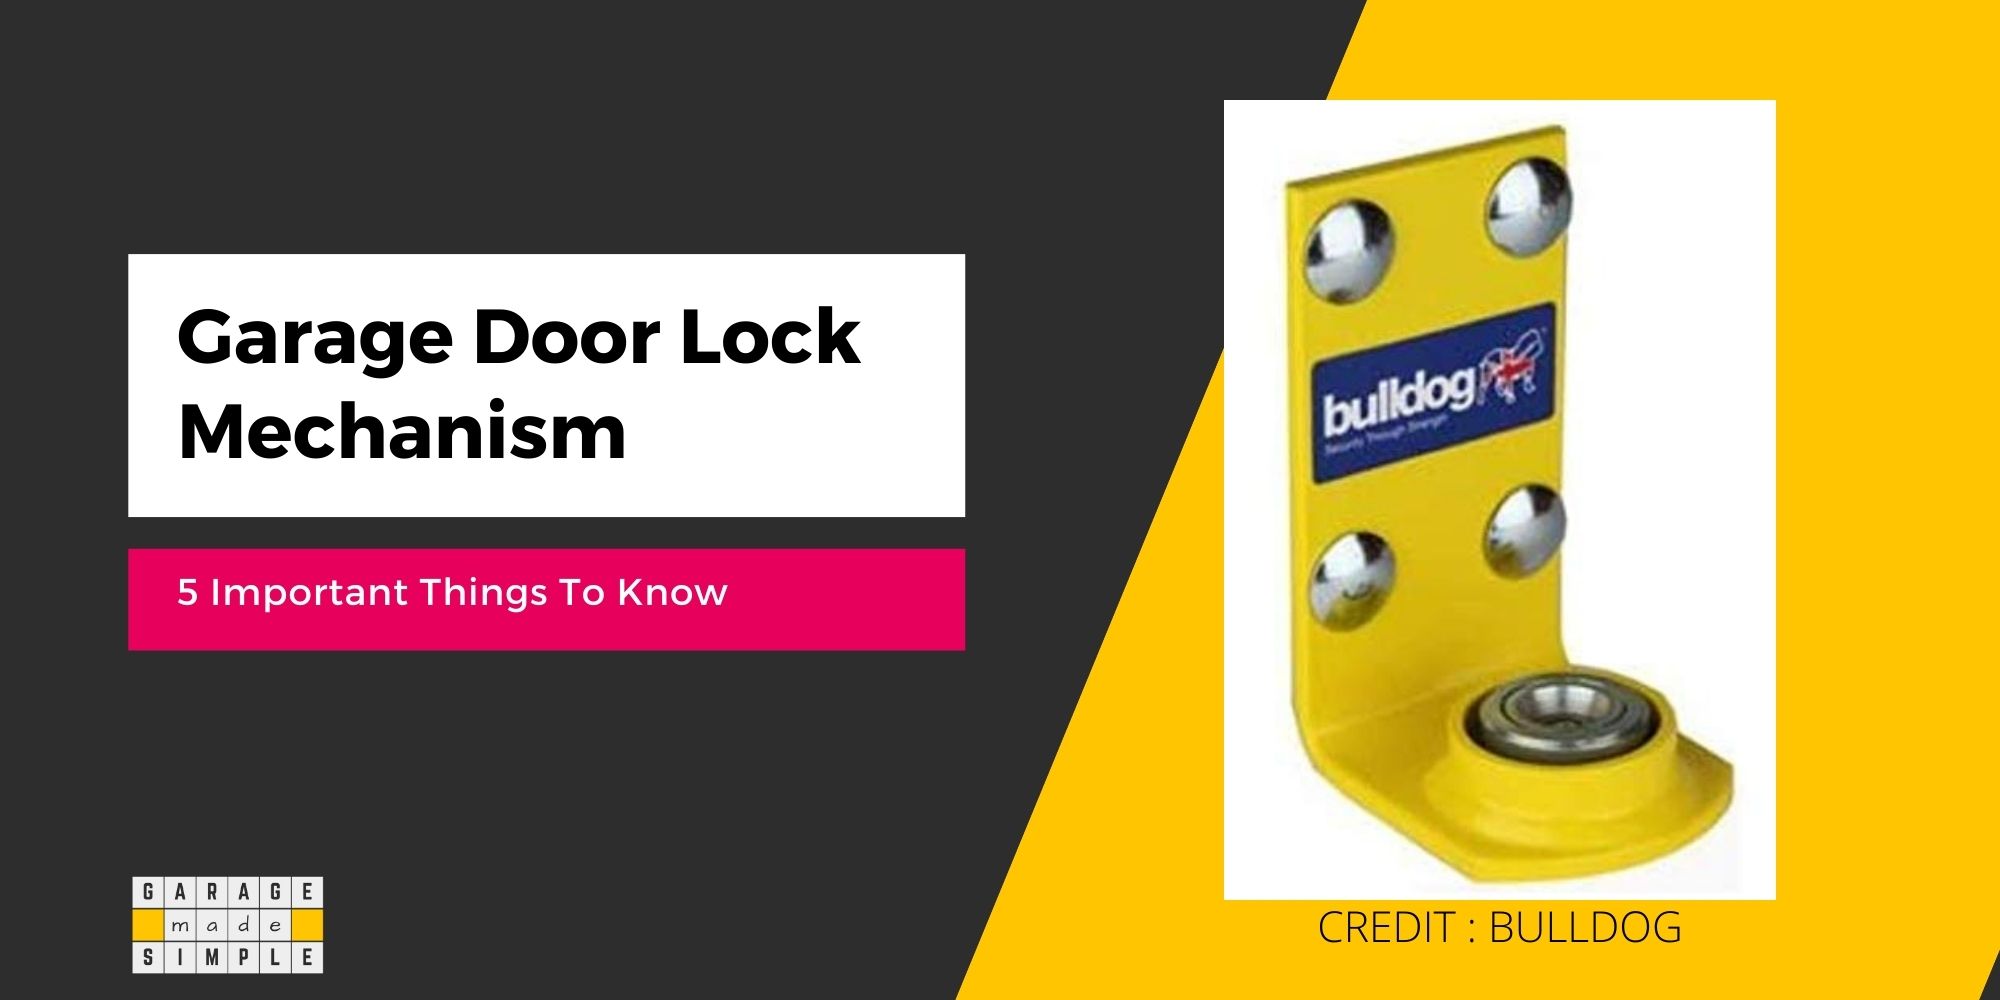 Garage Door Lock Mechanism: A Comprehensive Guide